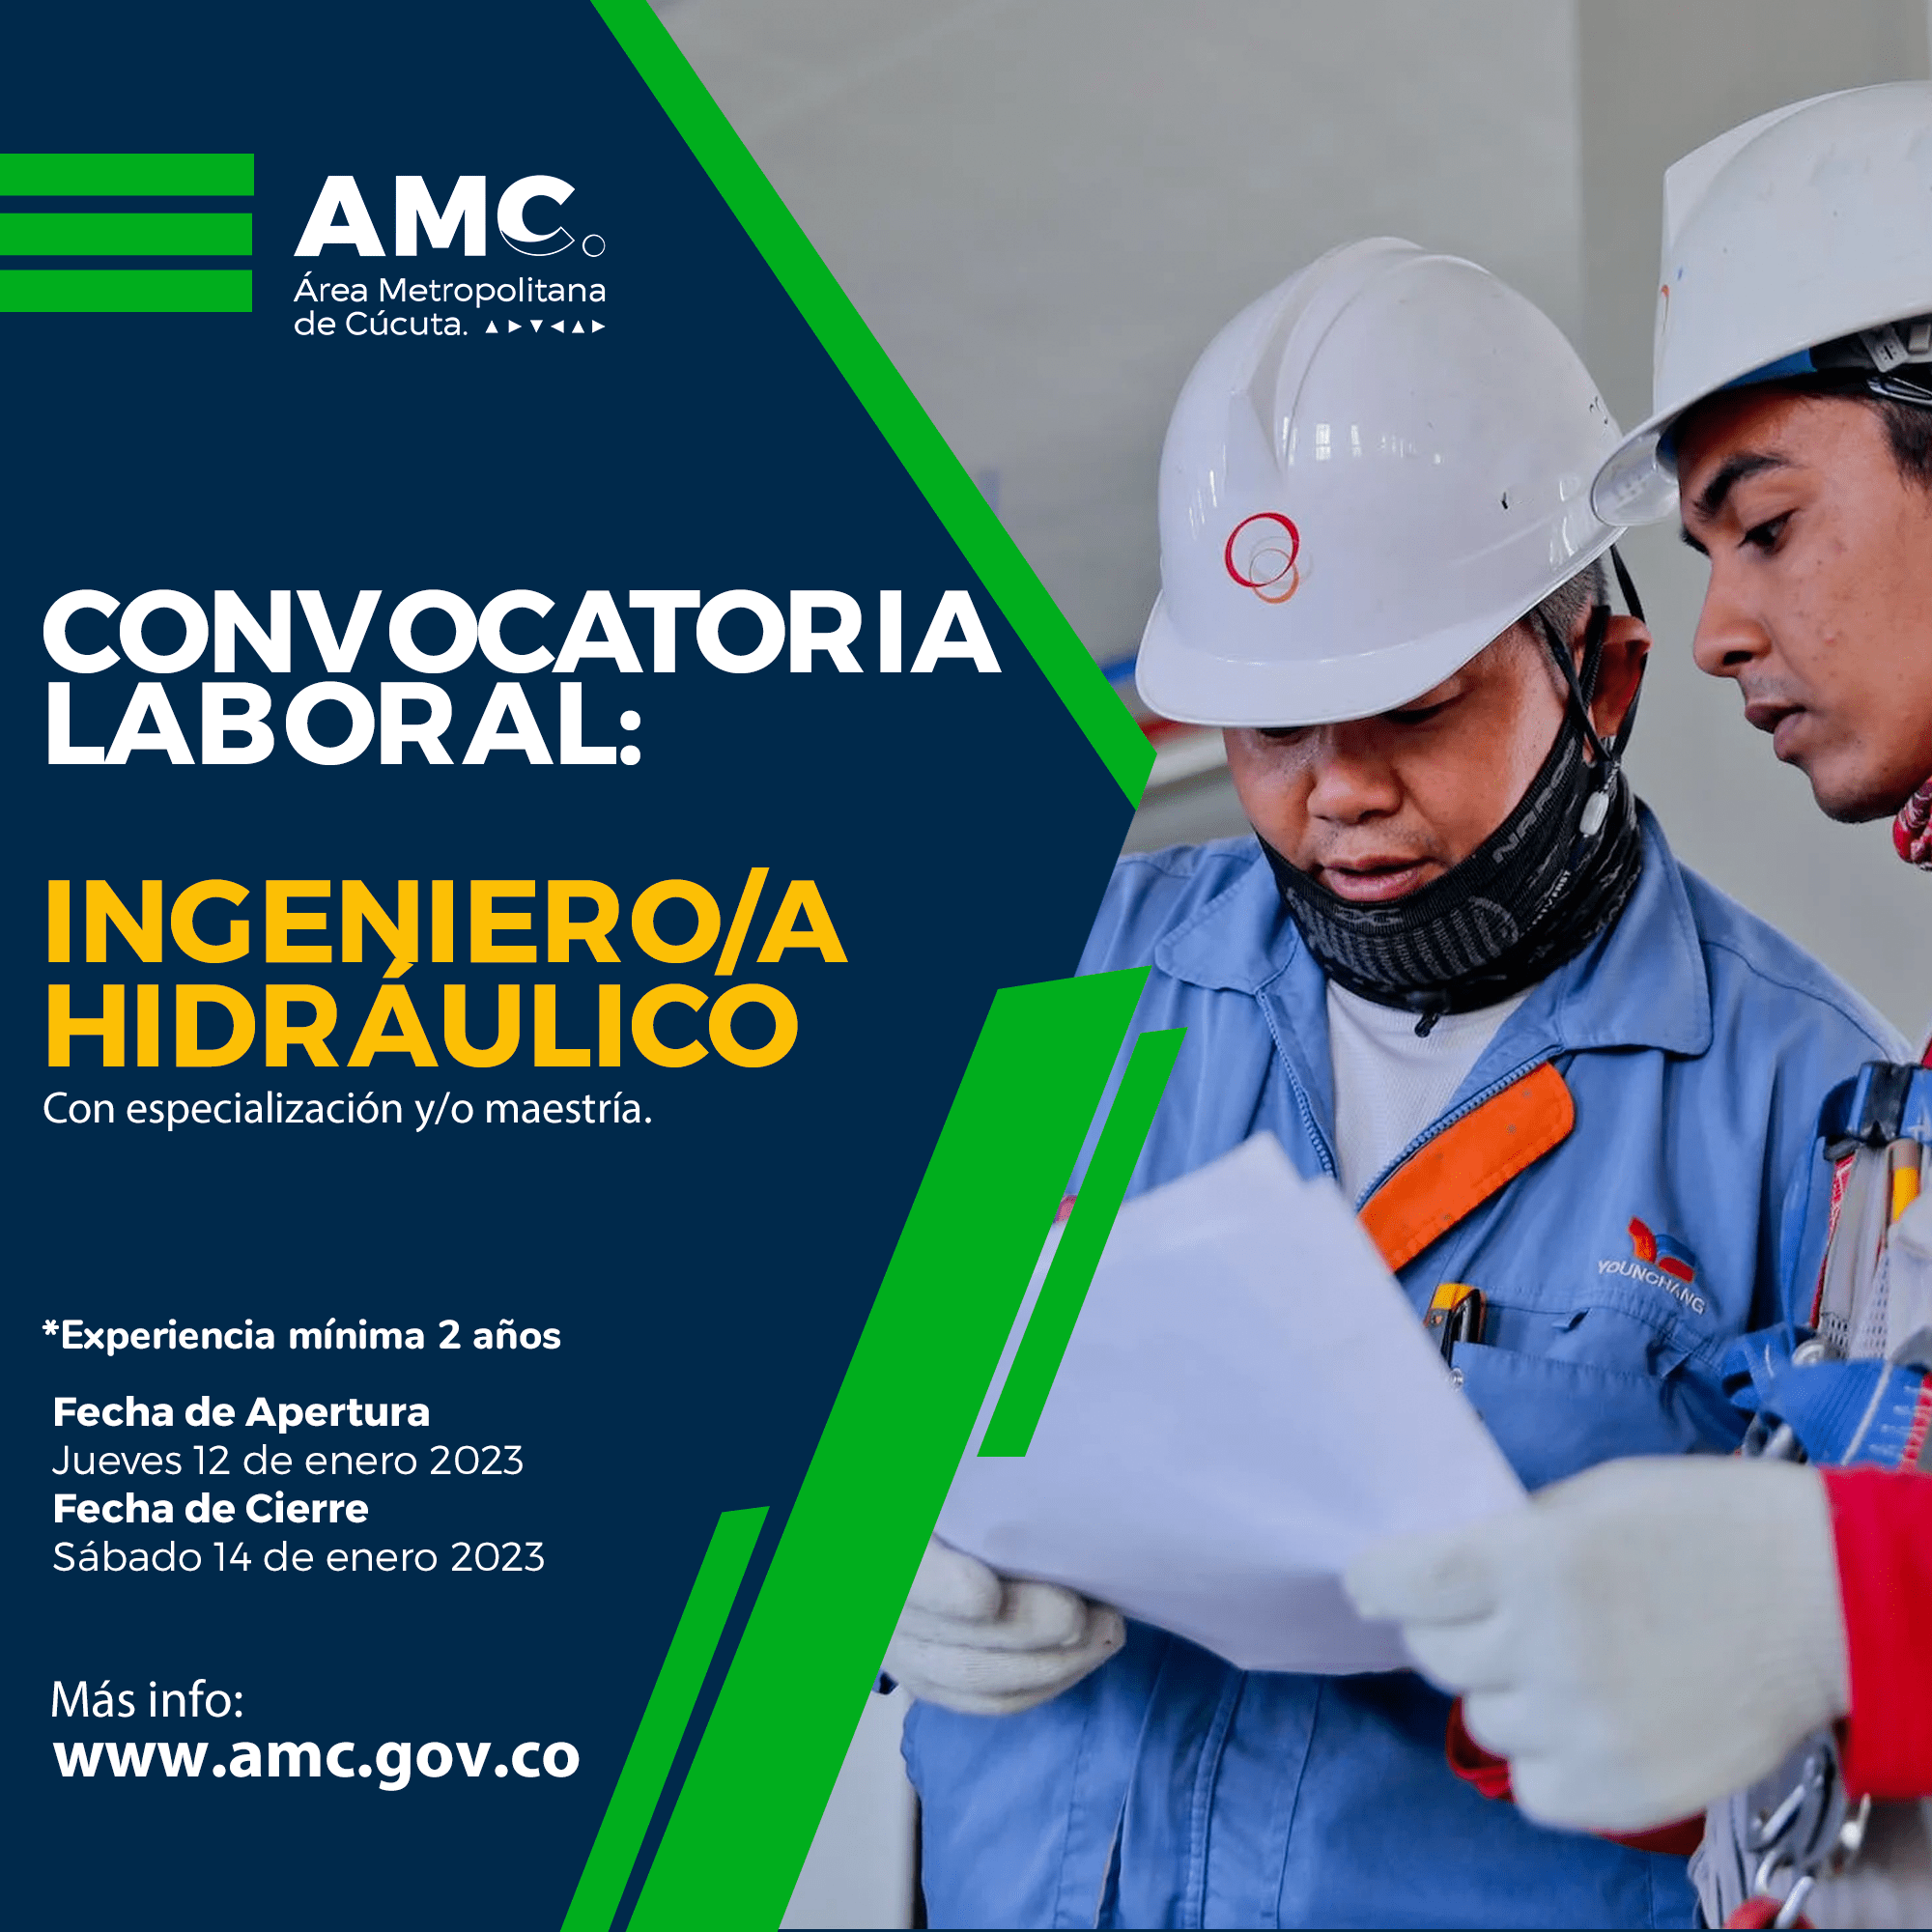 Convocatoria laboral para Ingeniero Hidráulico en el Área Metropolitana de Cúcuta